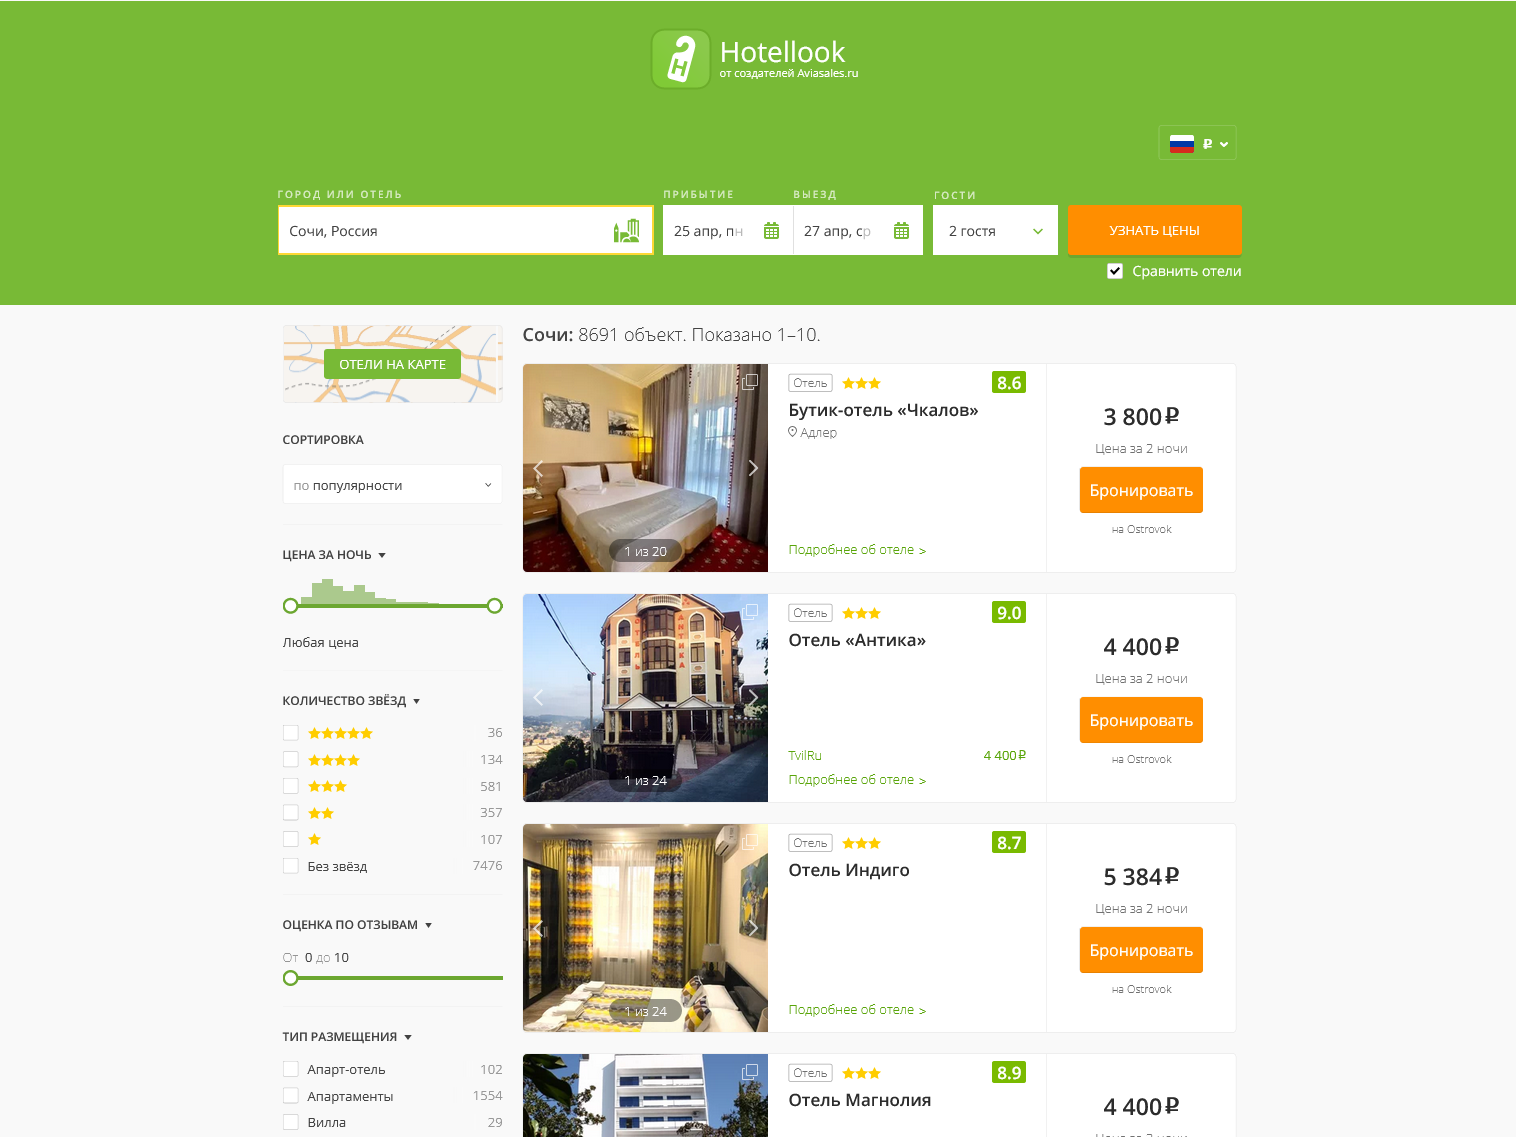 Поиск отелей по России через Hotellook